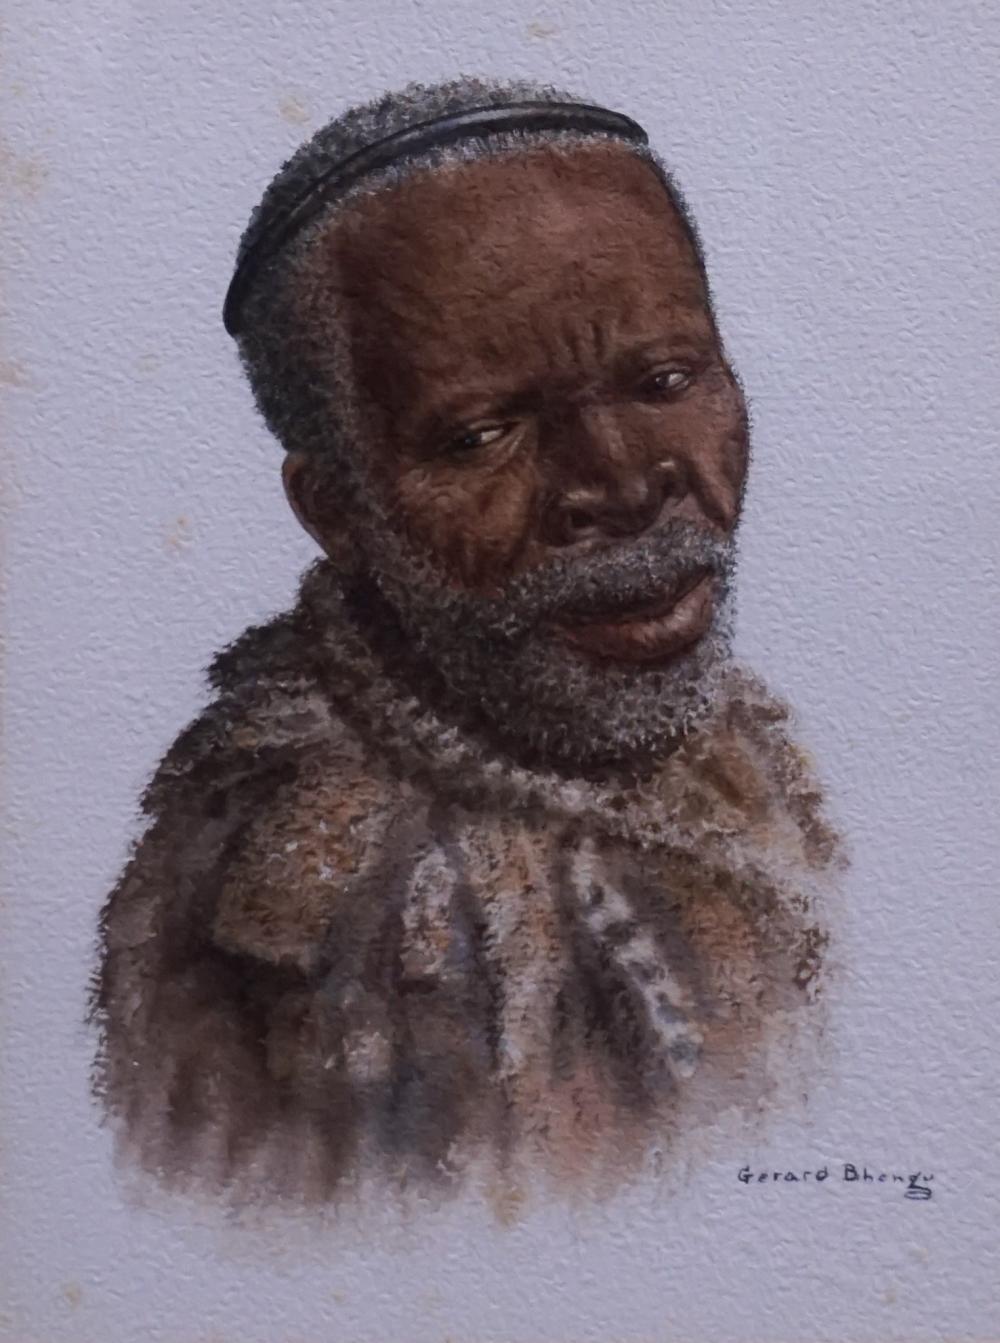 GERARD BHENGA SOUTH AFRICAN 1910 1990  330e9e